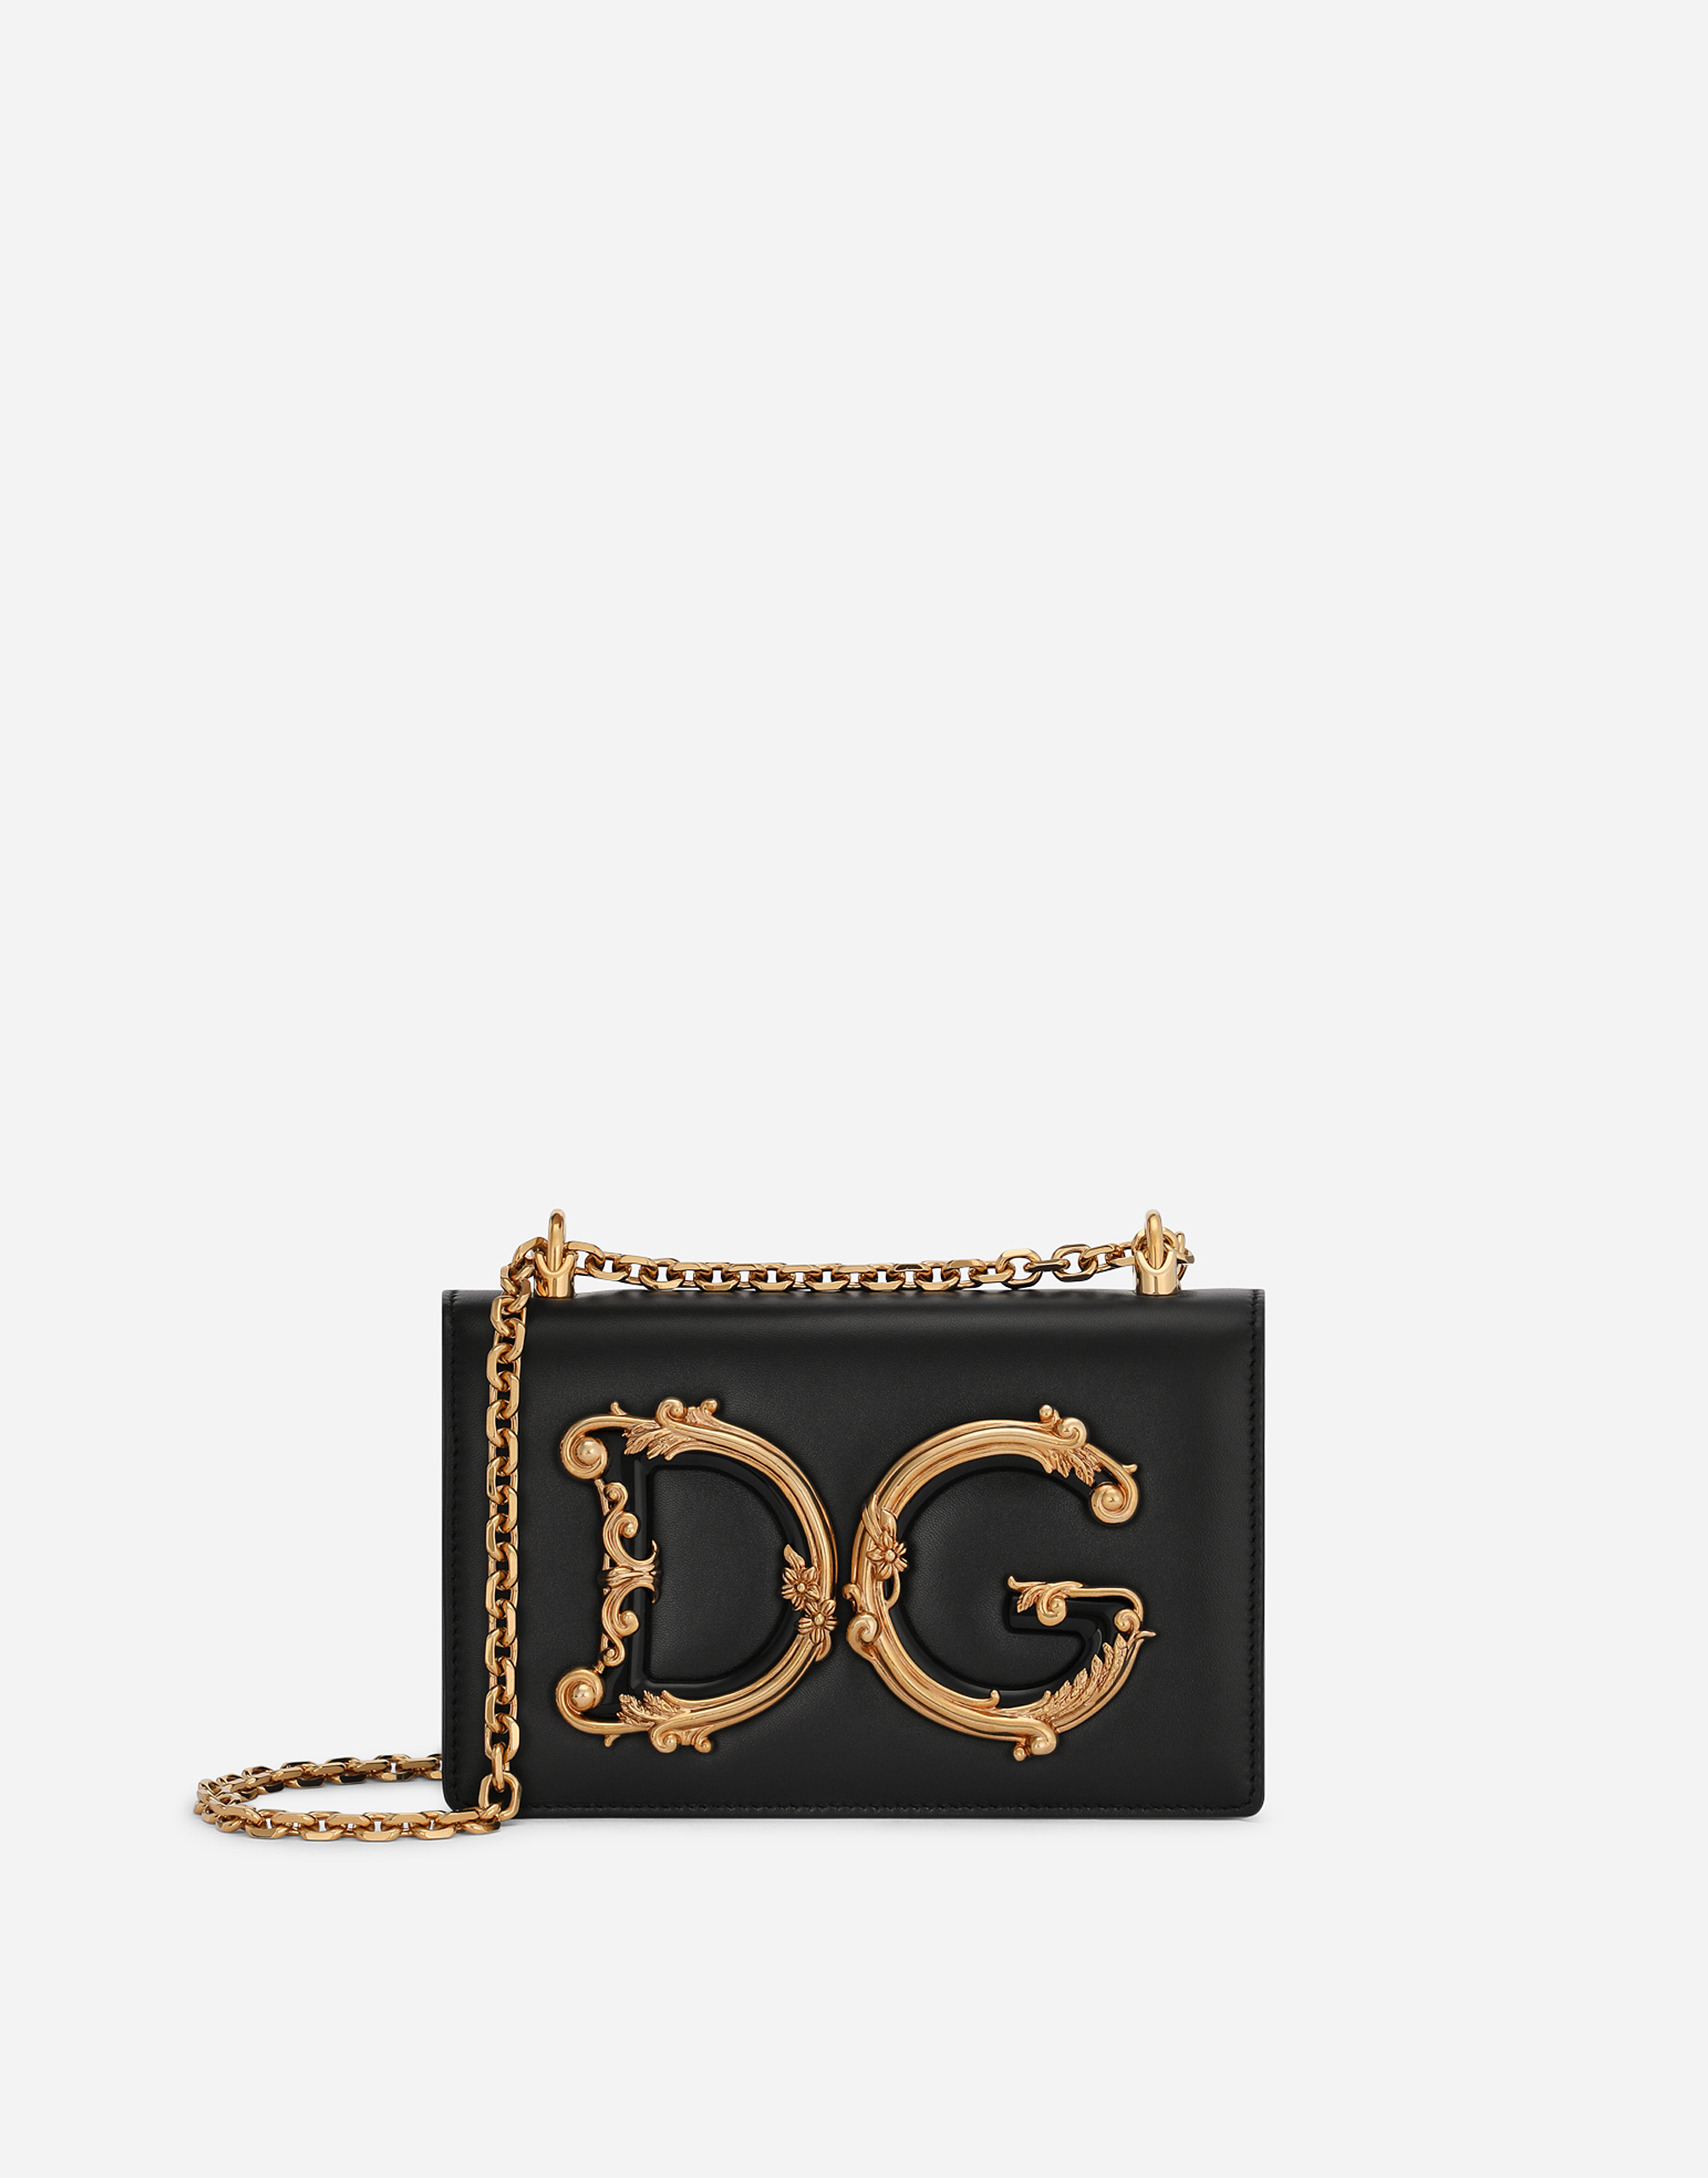 Dolce & Gabbana Nappa Leather Dg Girls Shoulder Bag In Black